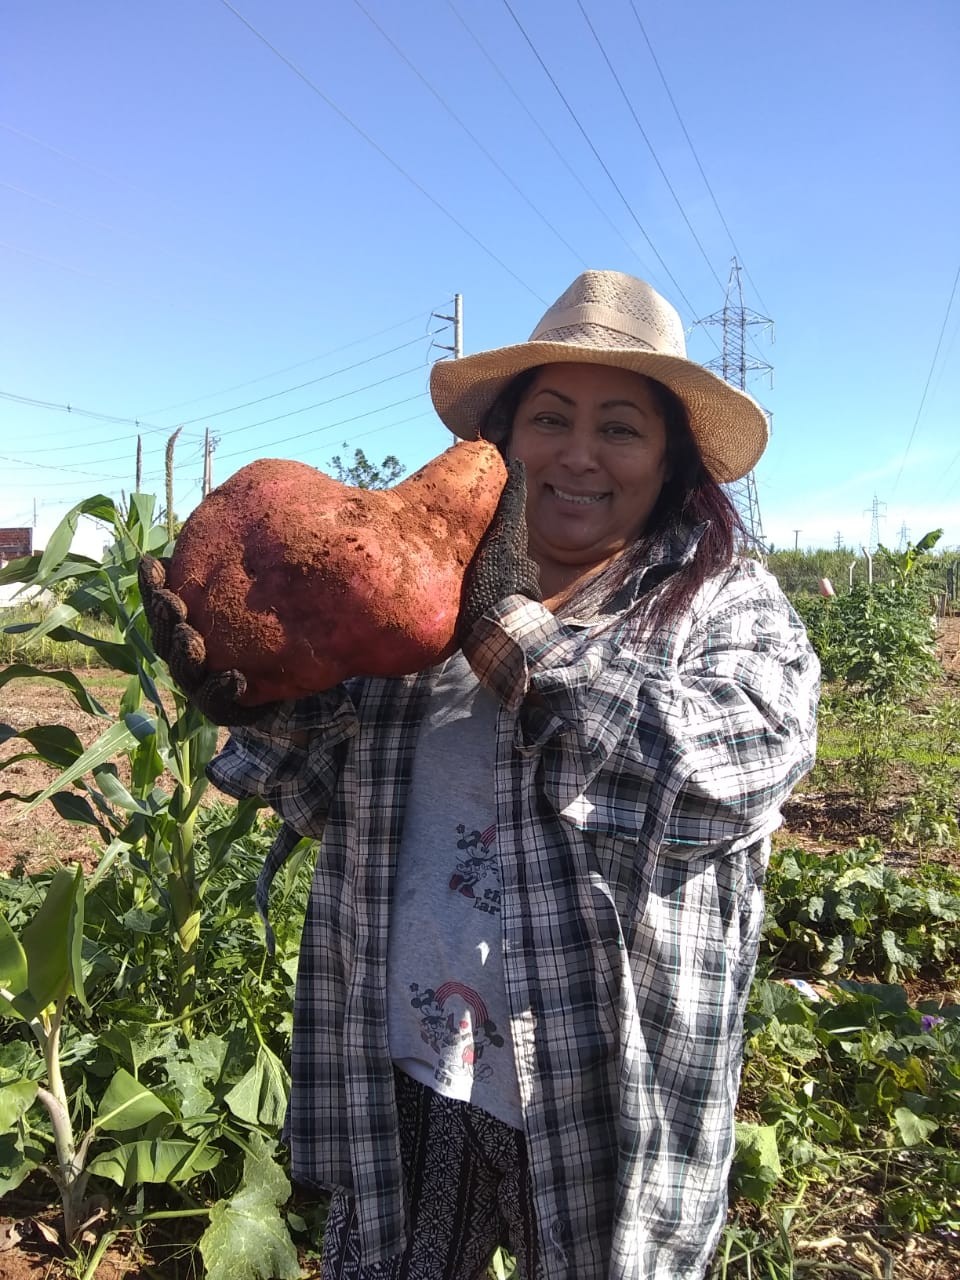 Agricultora colhe batata-doce gigante no Paraná: ‘Fiquei impressionada com o tamanho, era enorme’; VÍDEO